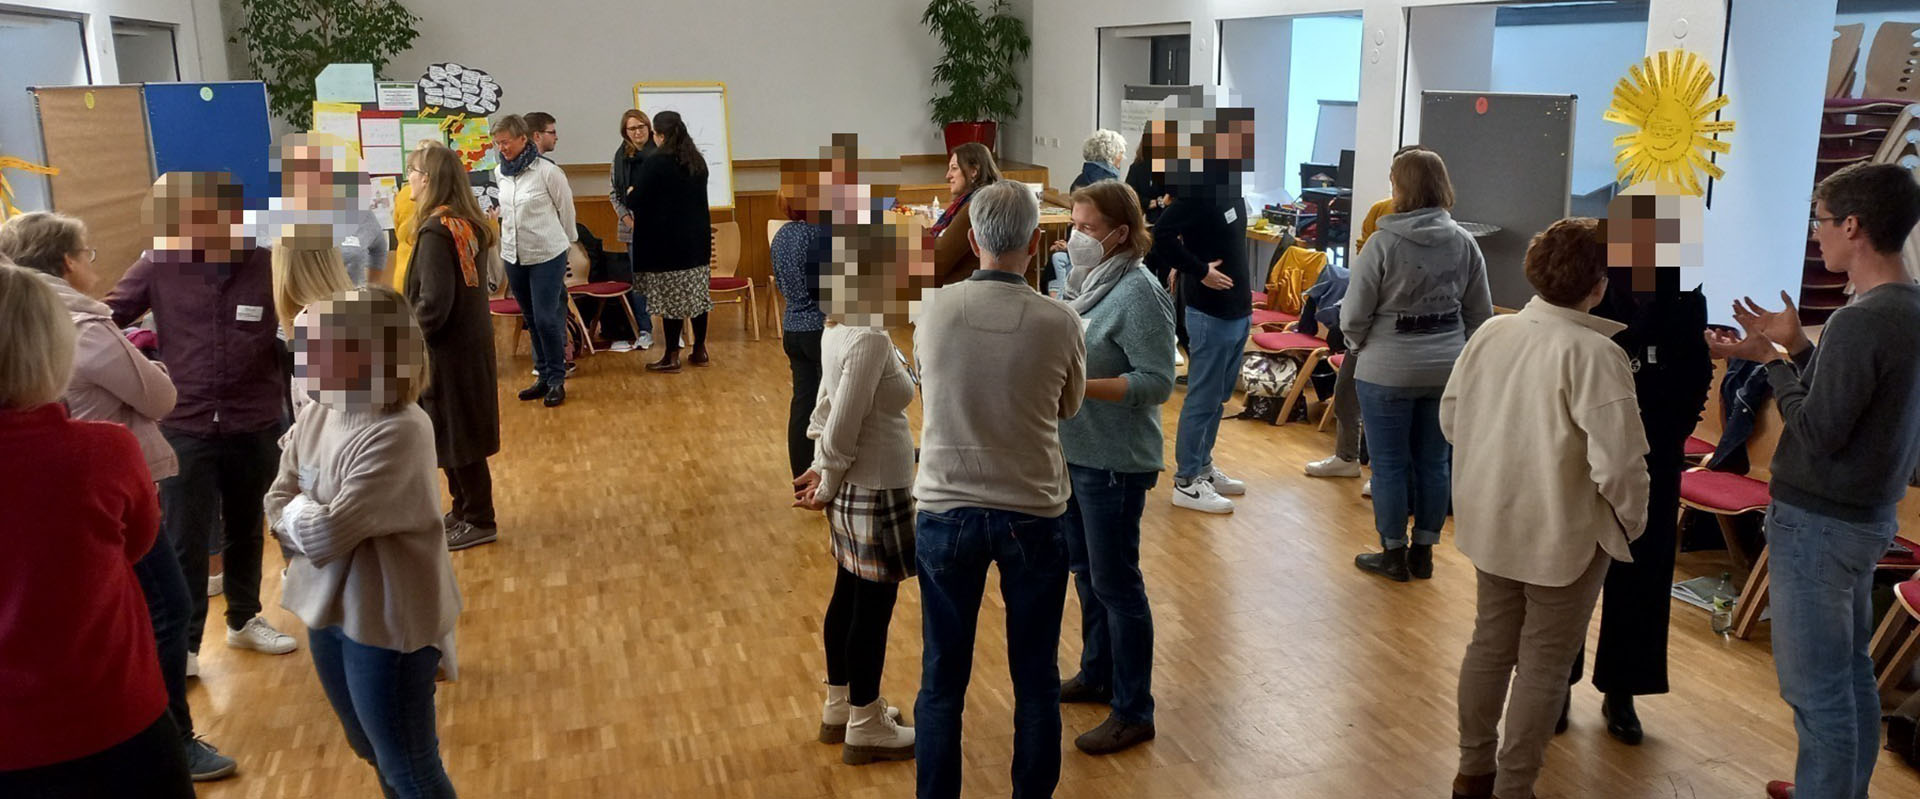 Workshop: Menschen stehen zusammen und sprechen miteinander